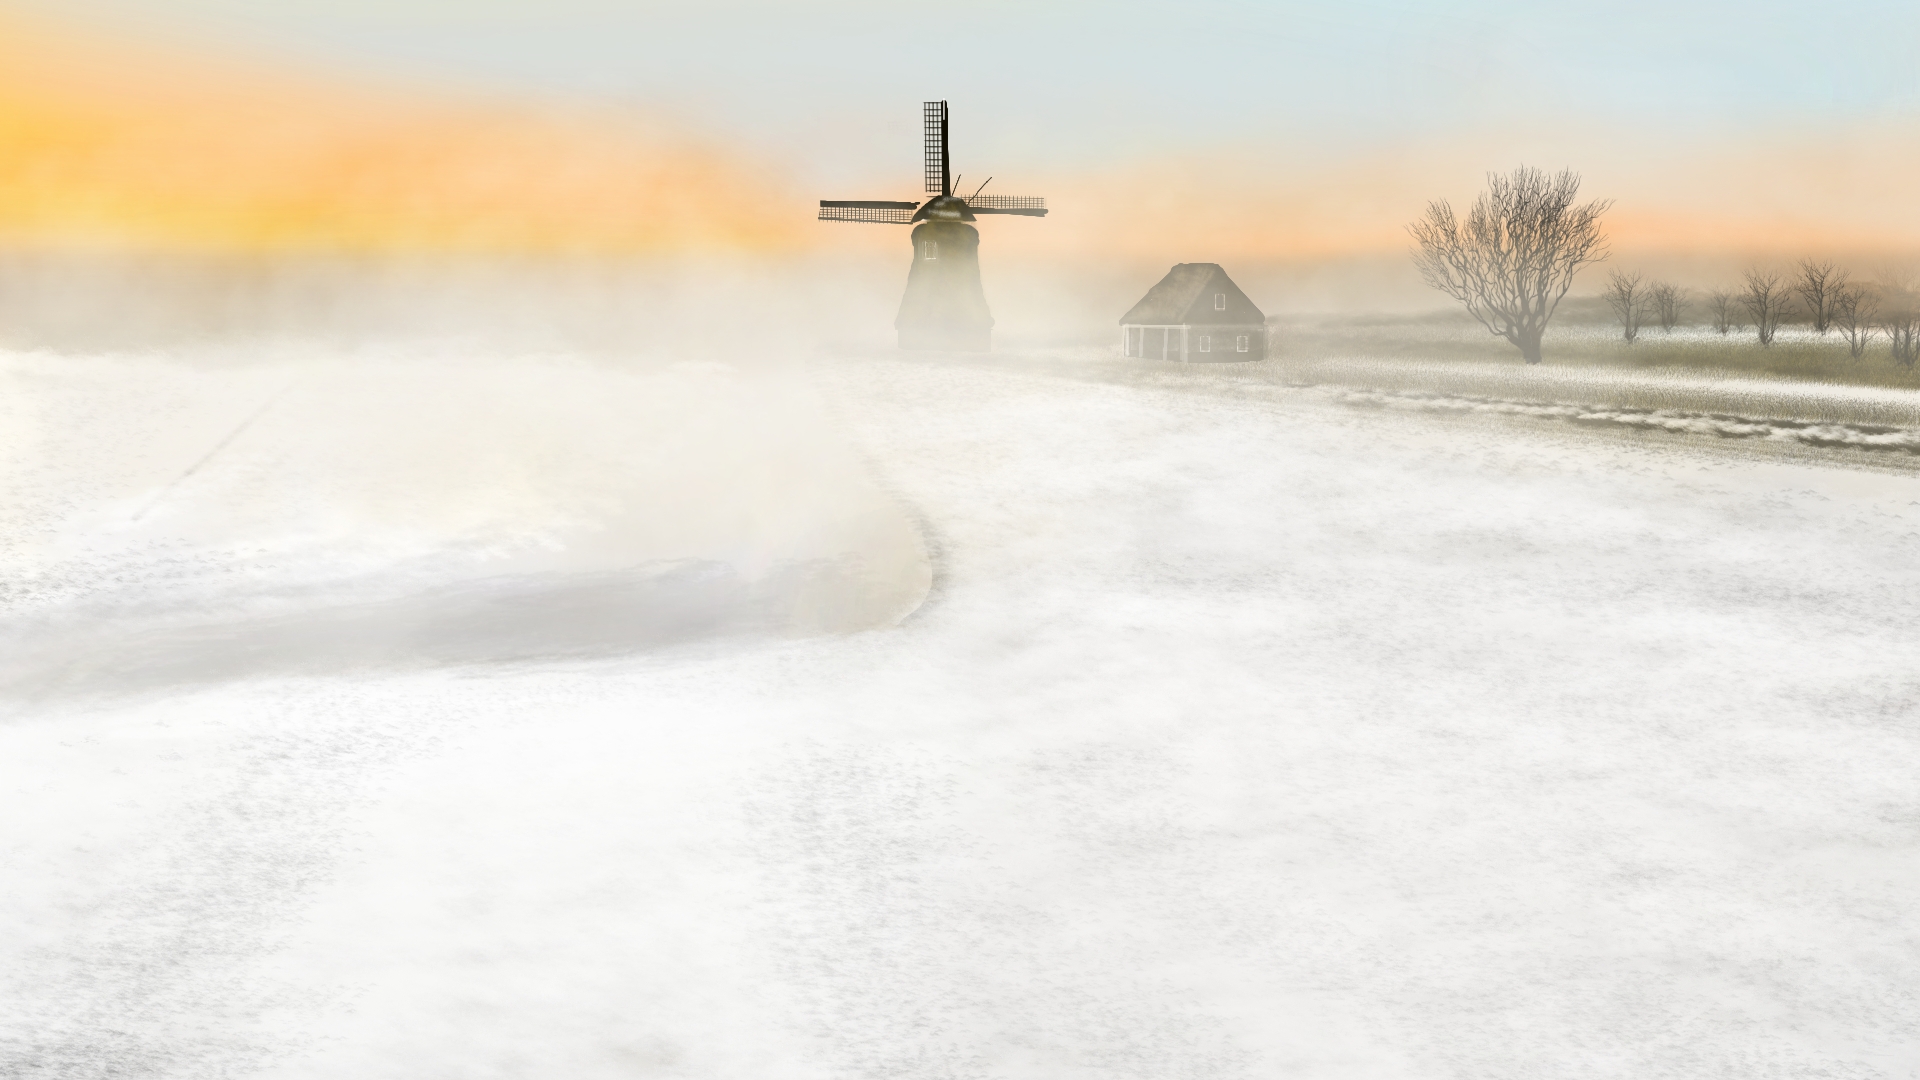 Digital Painting Digital Art Windmill Snow Nature Landscape 1920x1080